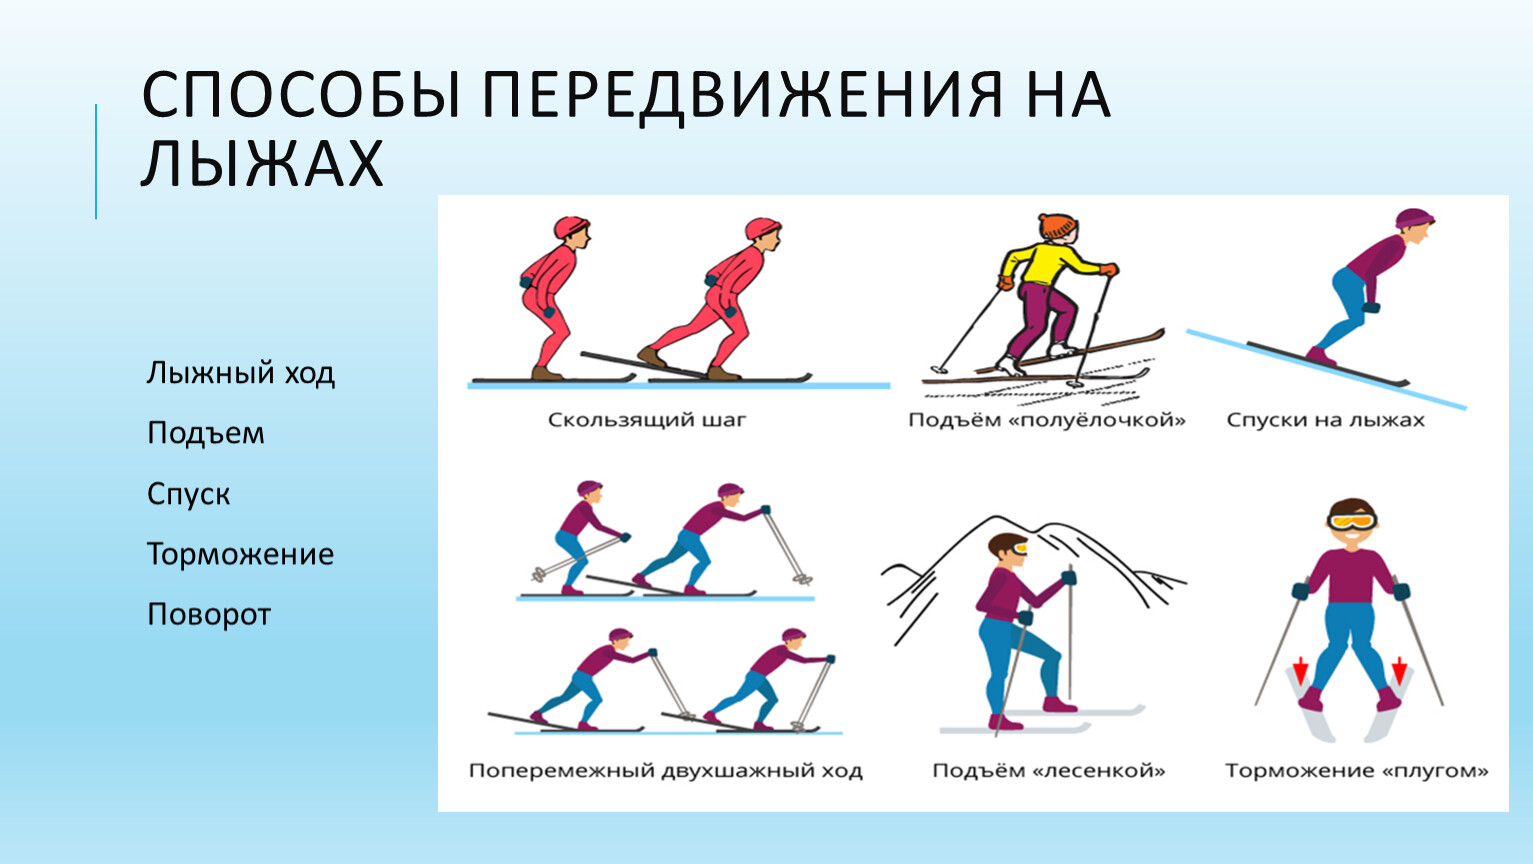 При передвижении на лыжах применяют. Способы передвижения на лыжах. Основные техники передвижения на лыжах. Способы перемещения на лыжах. Лыжная подготовка.